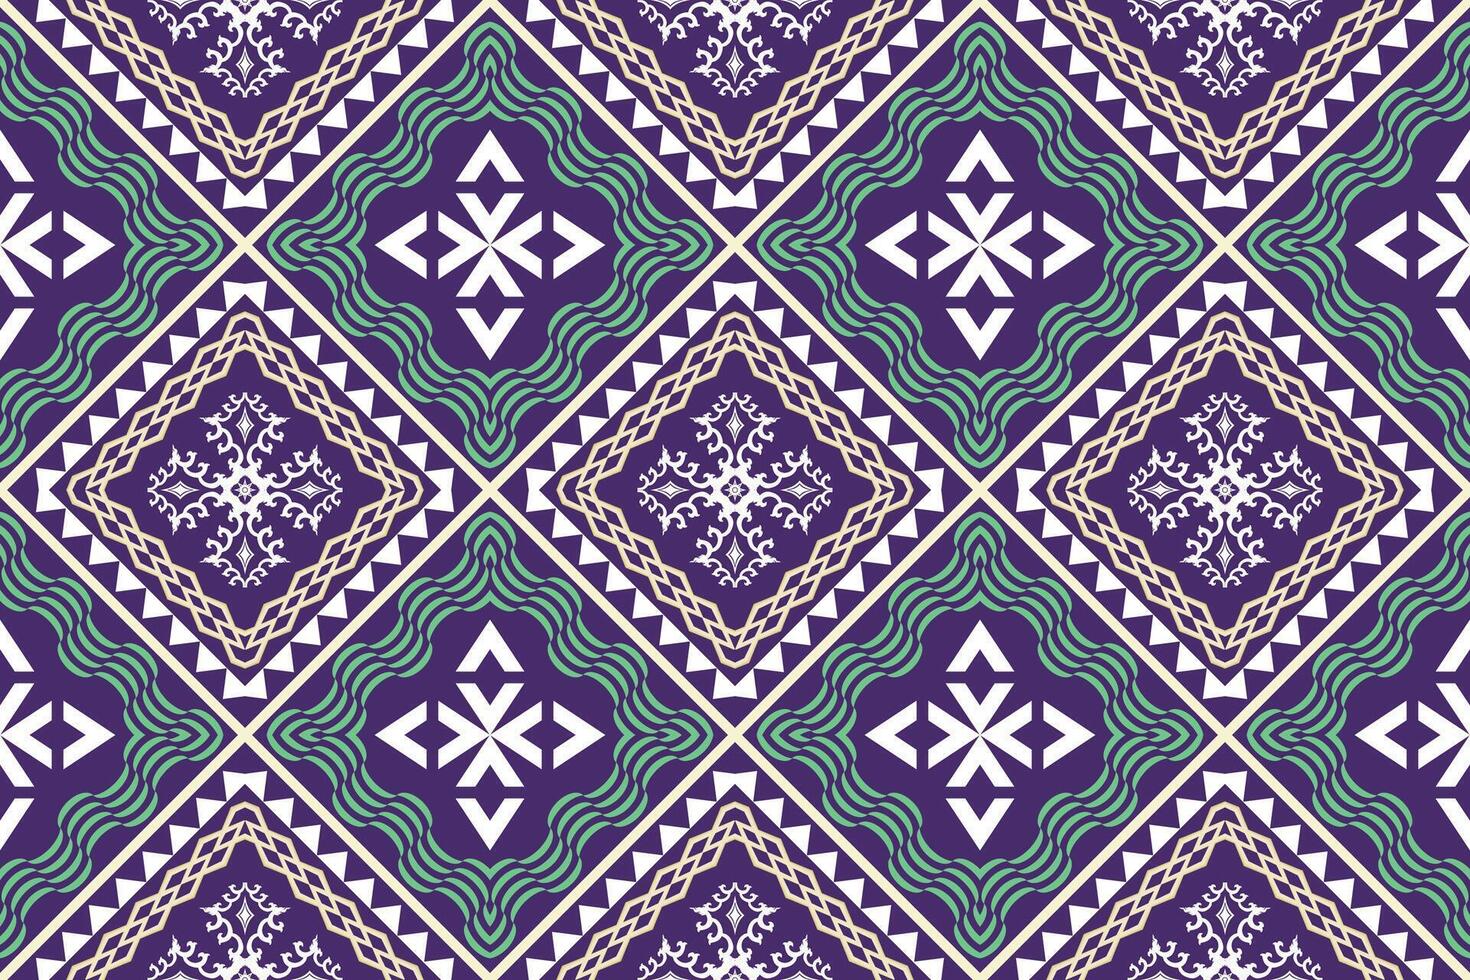 étnico figura azteca bordado estilo.geométrico ikat oriental tradicional Arte patrón de diseño para étnico fondo,fondo de pantalla,moda,ropa,envoltura,tela,elemento,pareo,gráfico,vector ilustración. vector